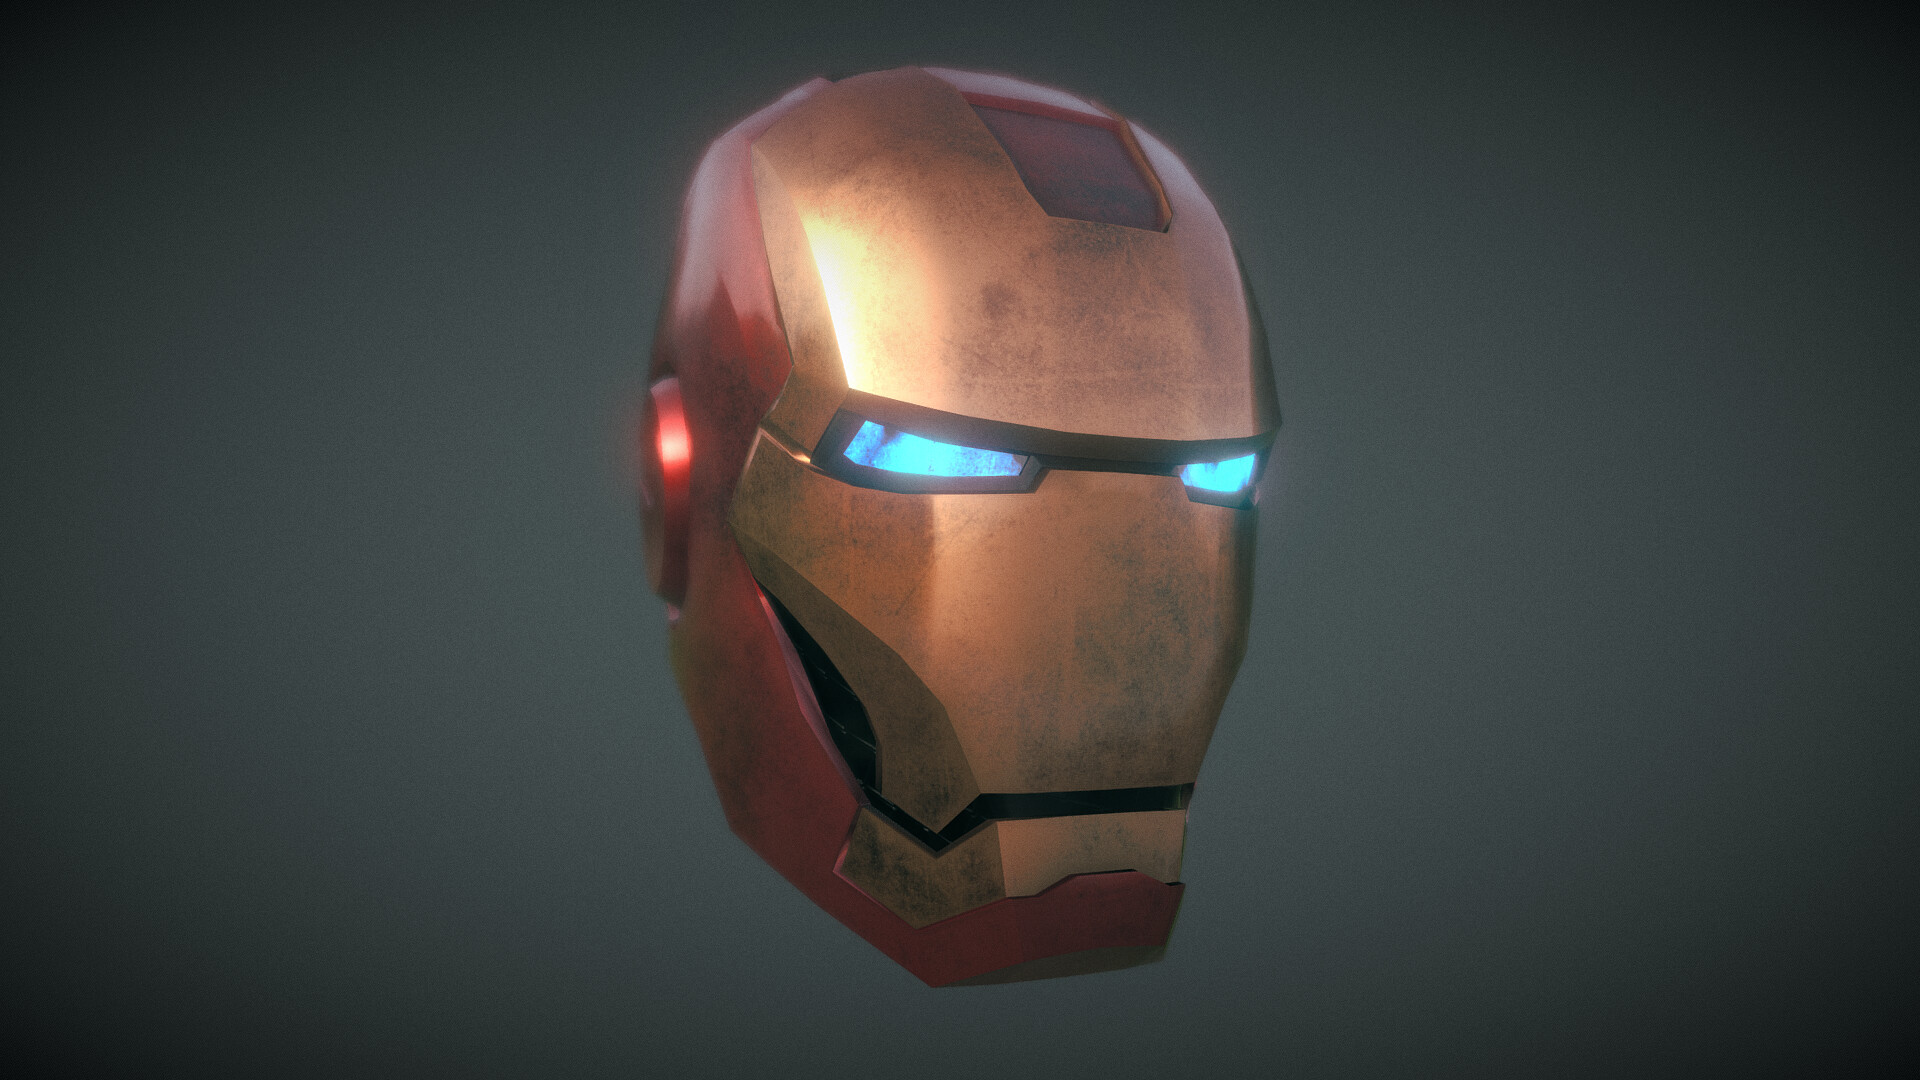 ArtStation - Iron Man Helmet